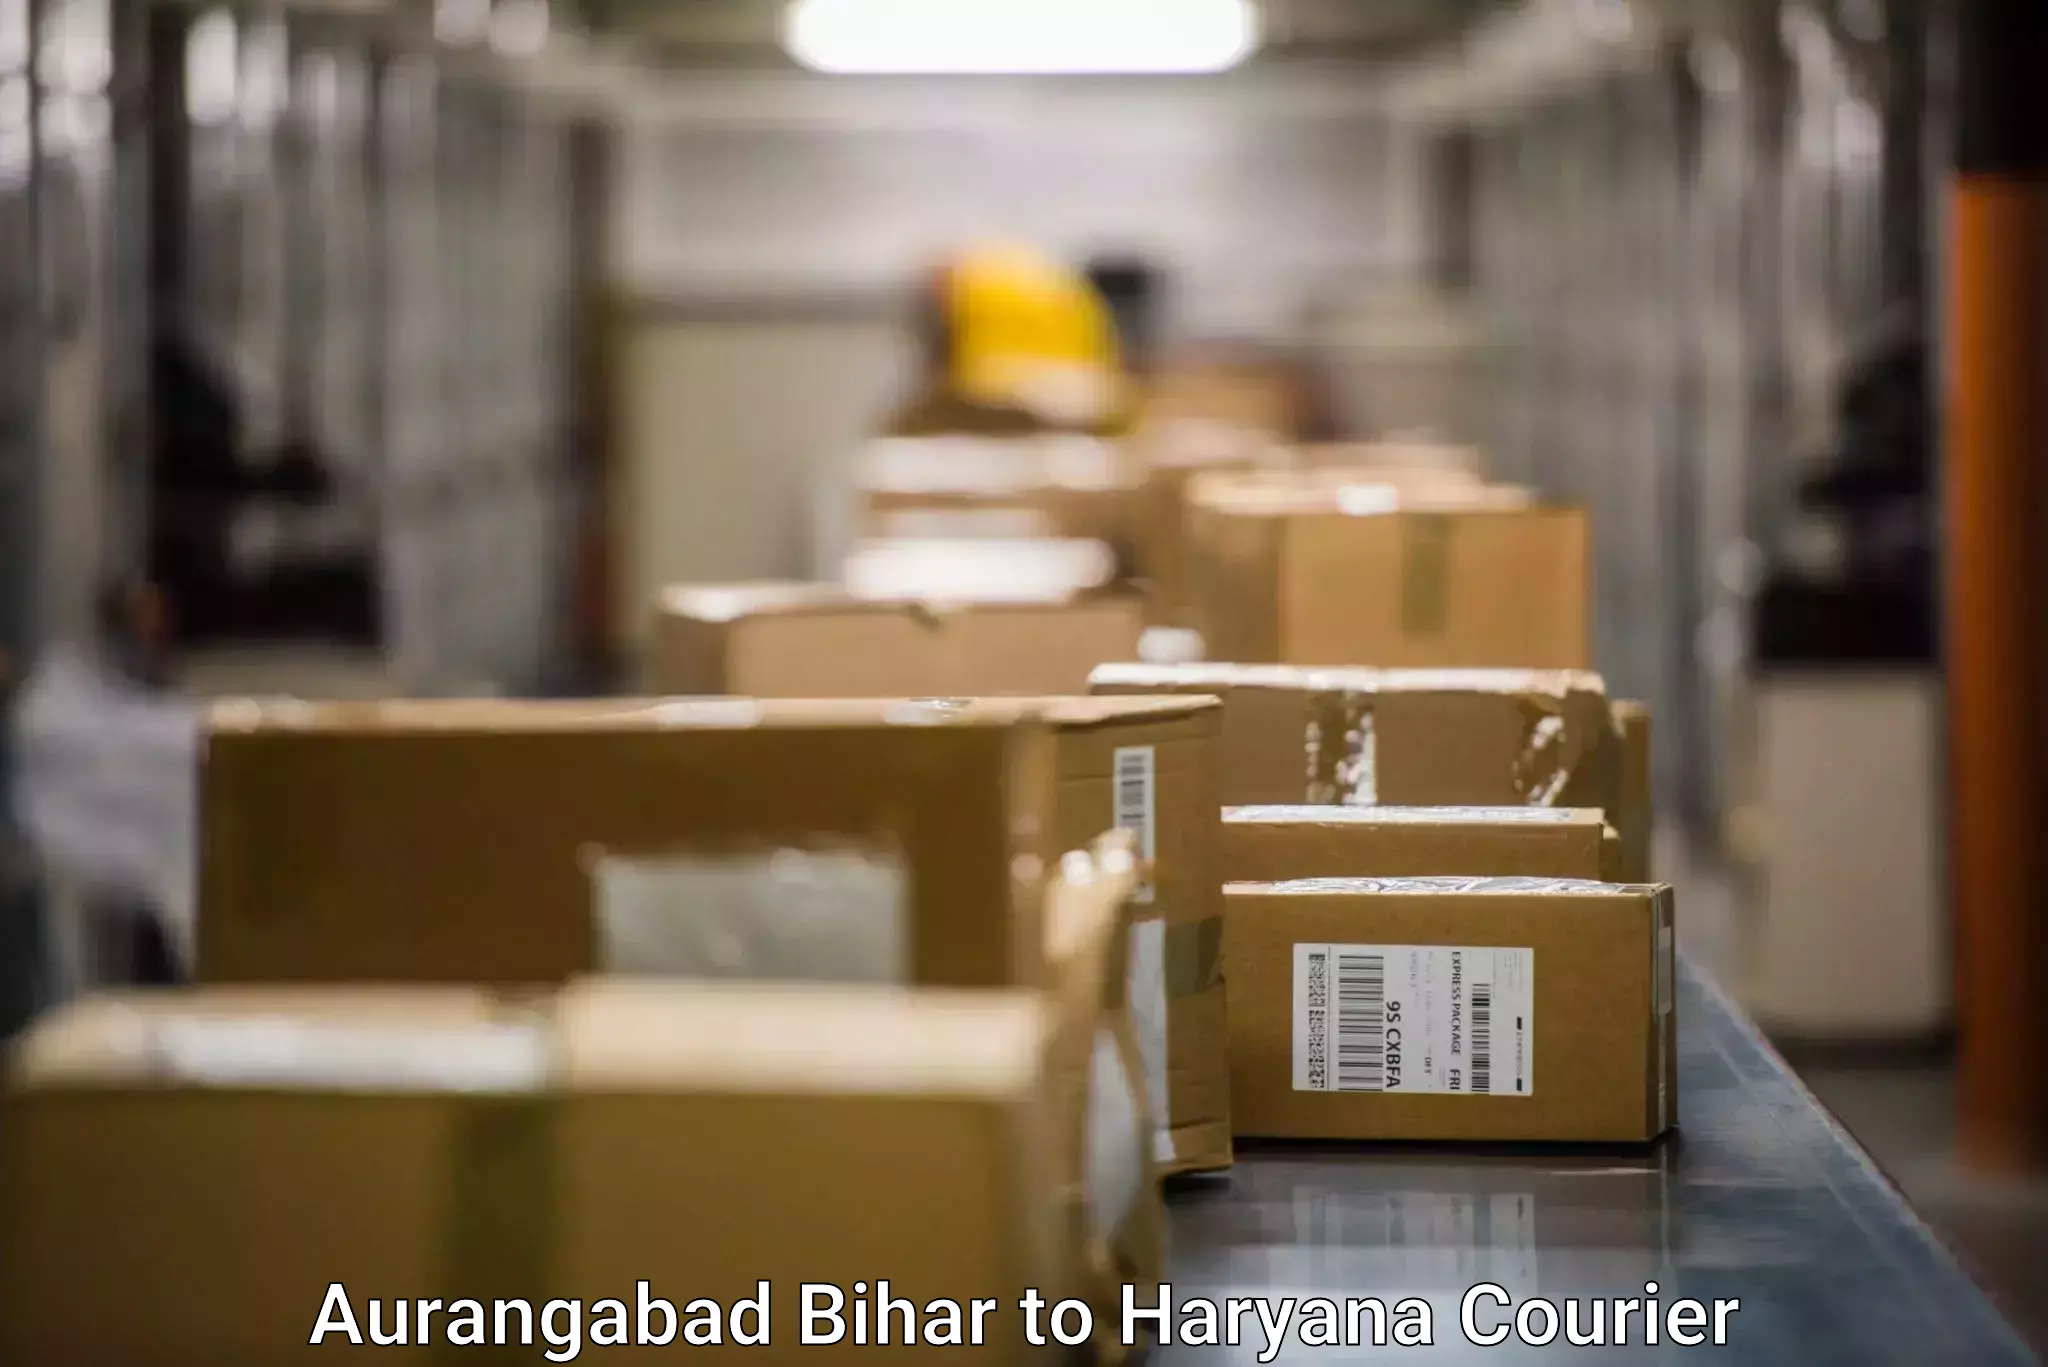 Bulk order courier Aurangabad Bihar to Kurukshetra